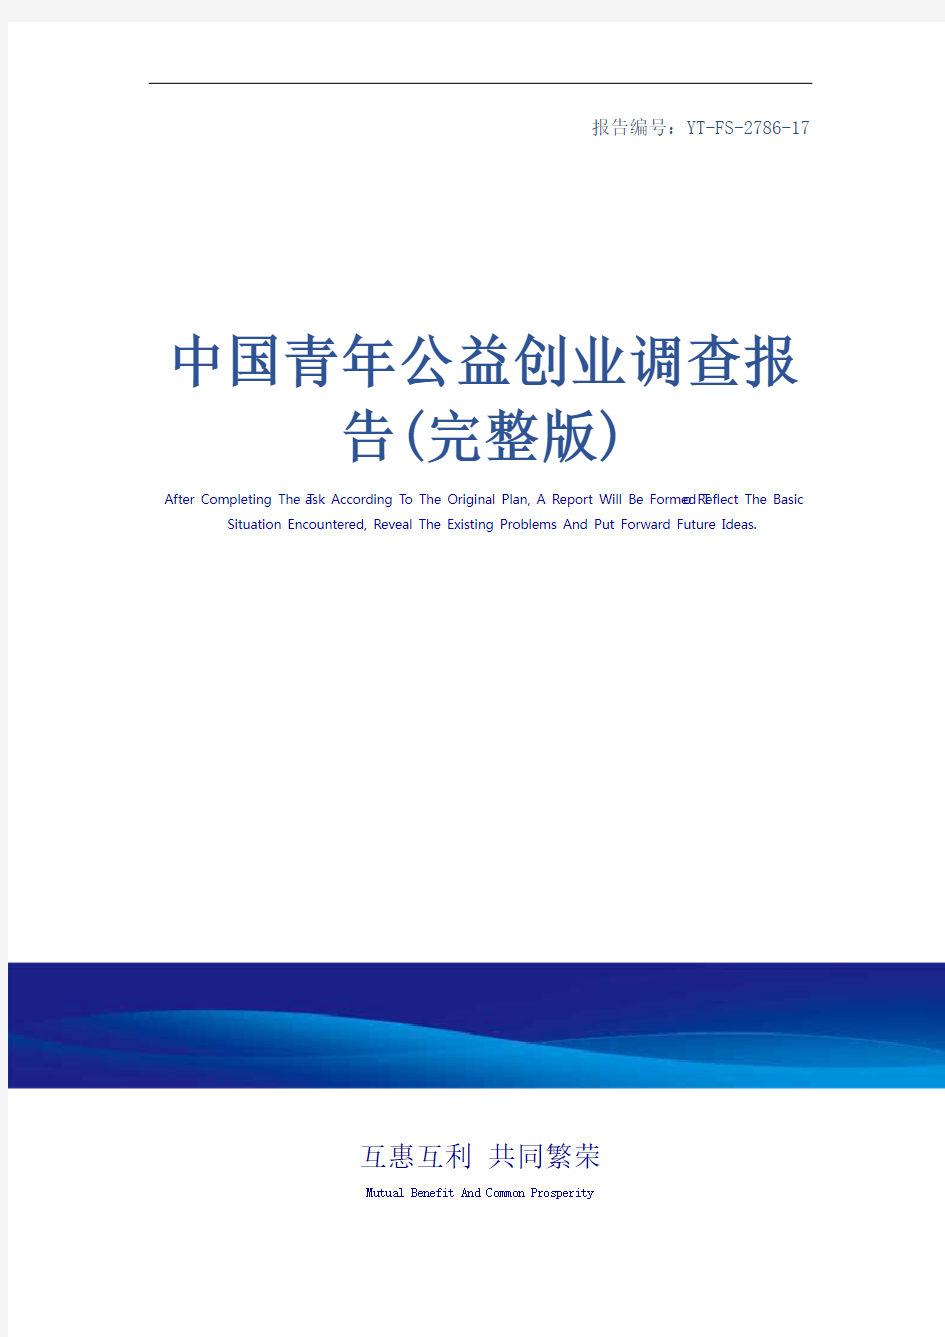 中国青年公益创业调查报告(完整版)_1